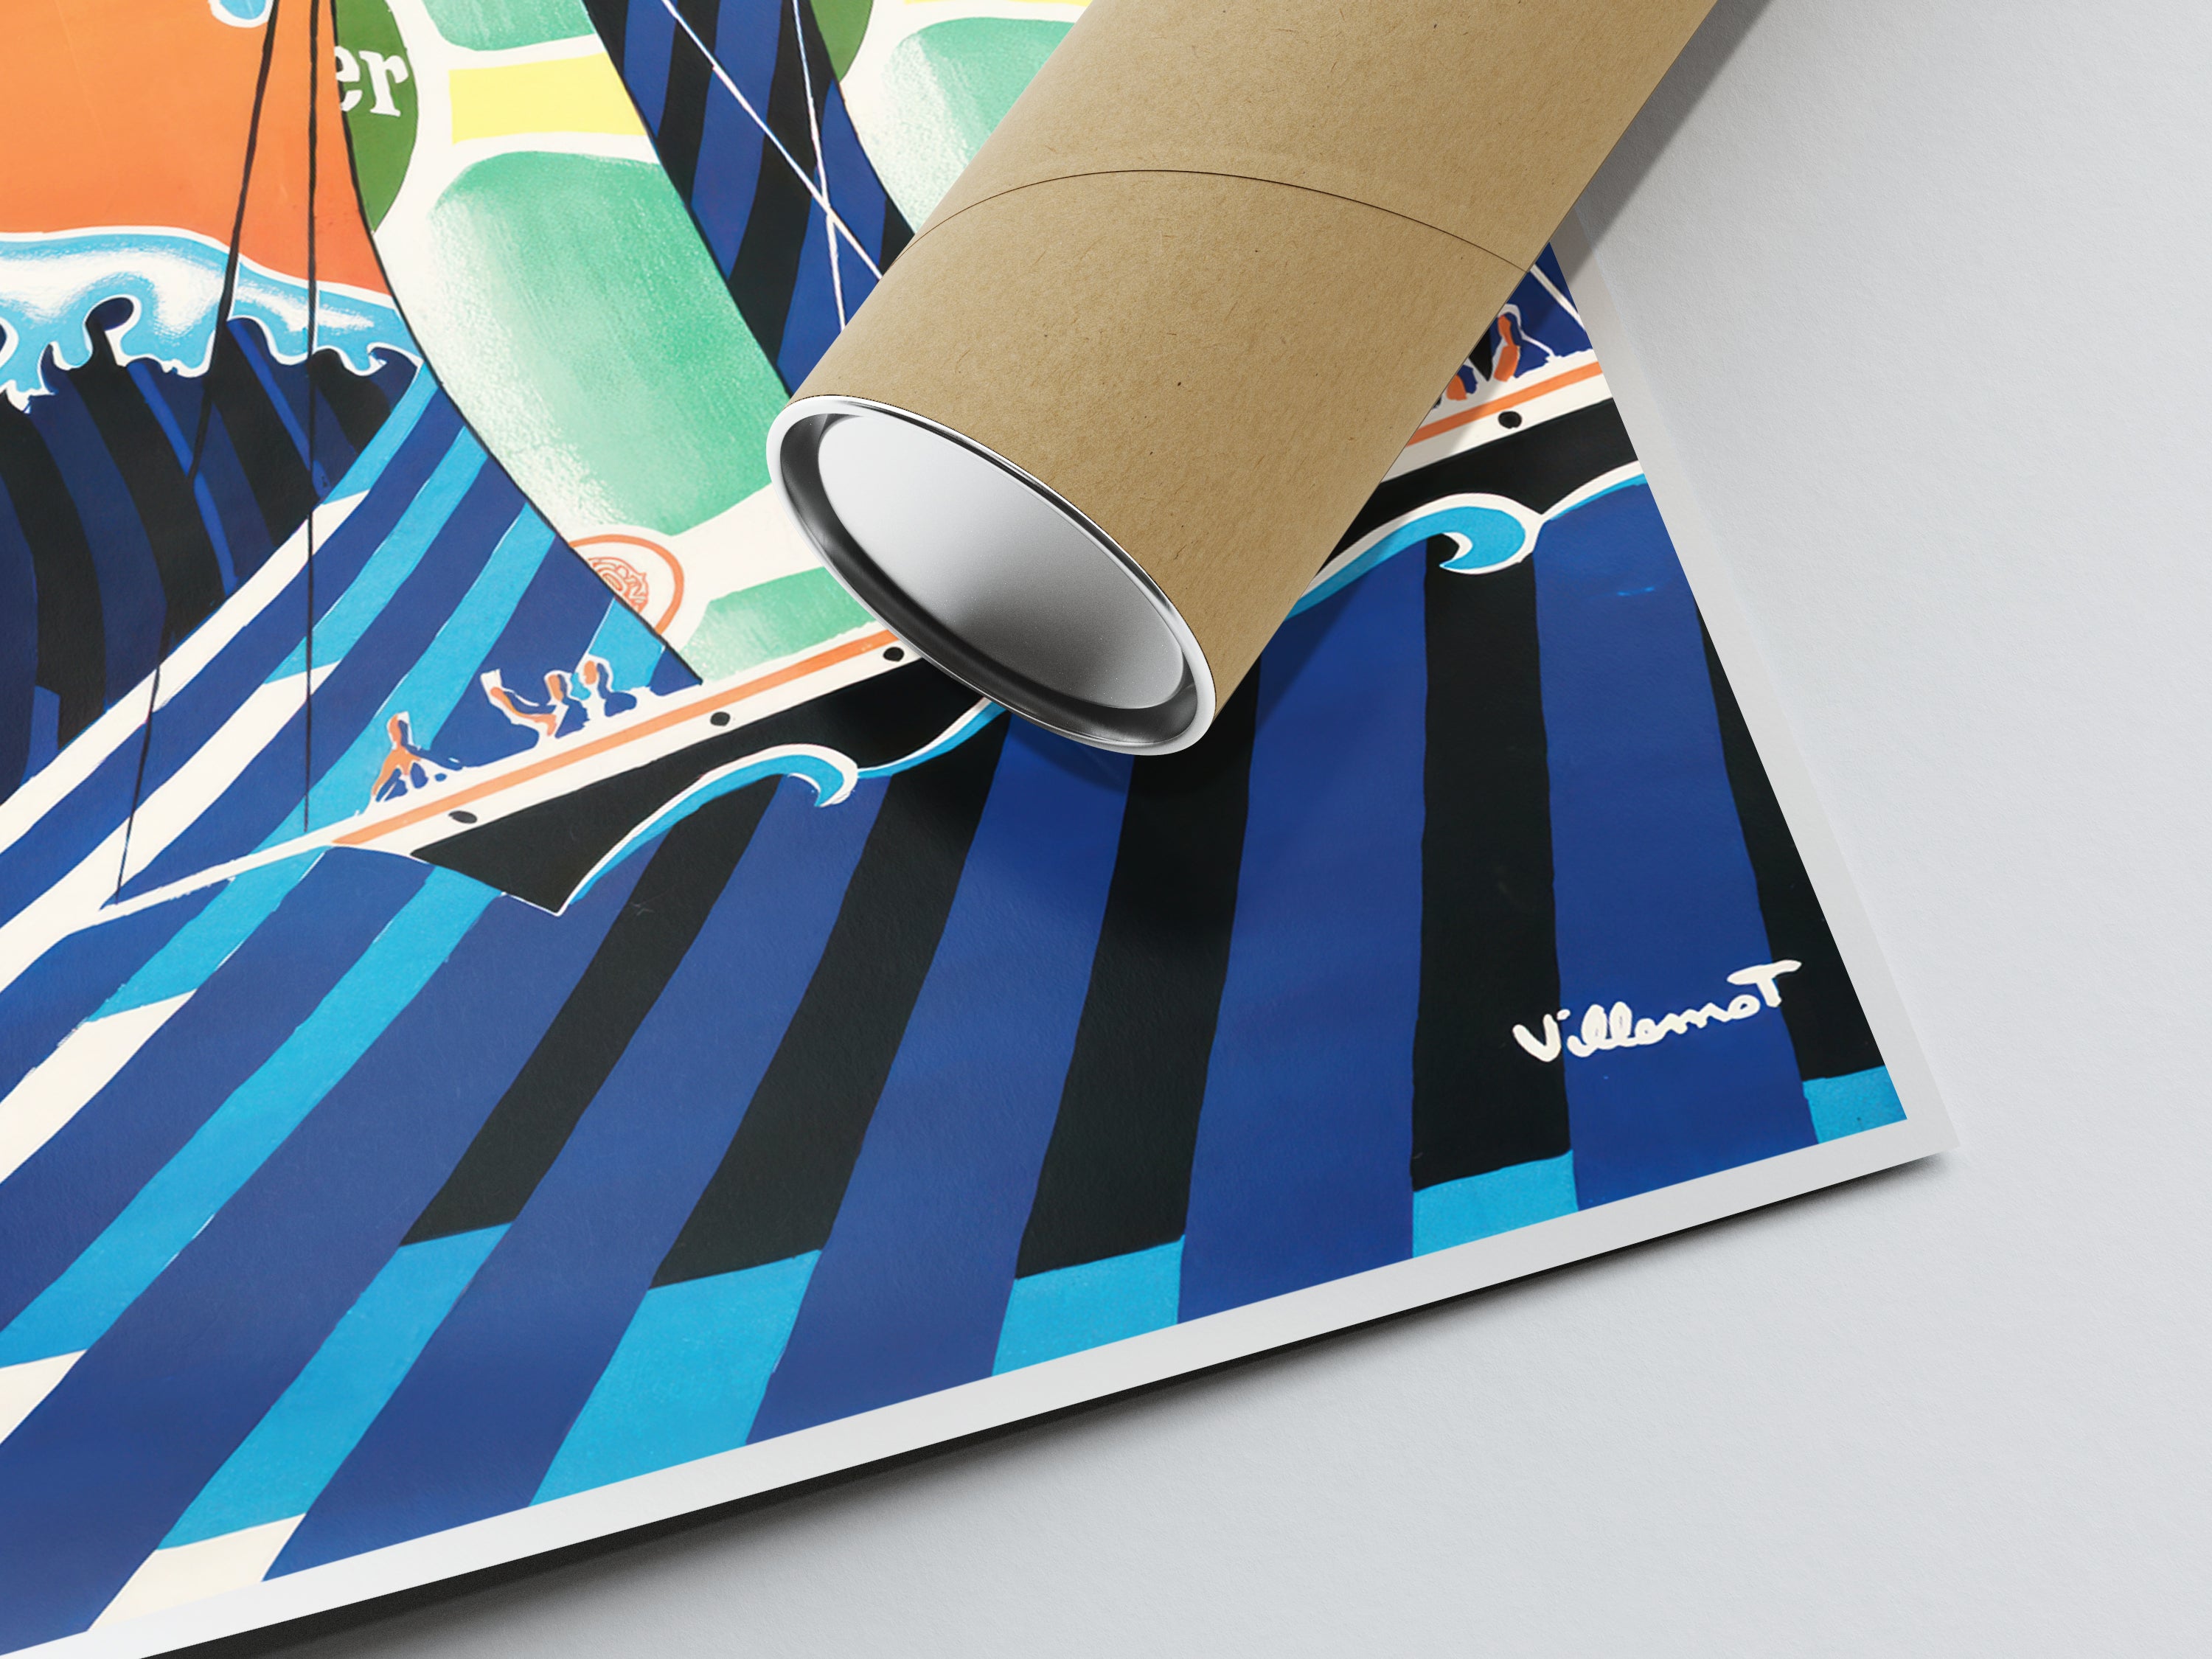 Affiche Perrier "Voiliers Perrier" - Villemot - Haute Définition - papier mat 230gr/m²